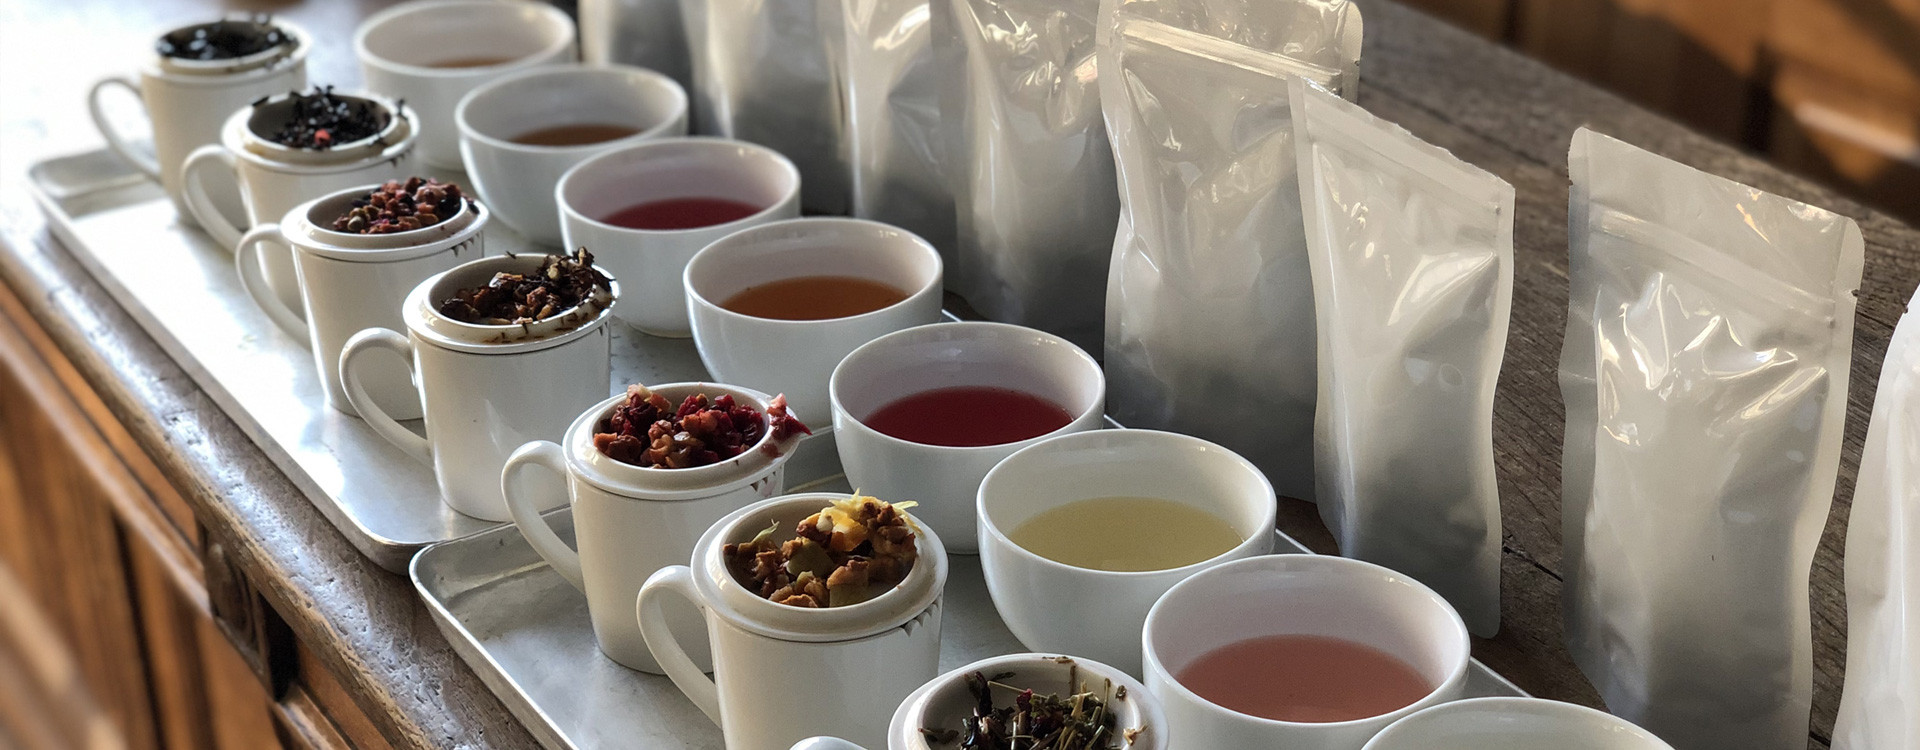 Pourquoi choisir le sachet pour la conservation du thé ?